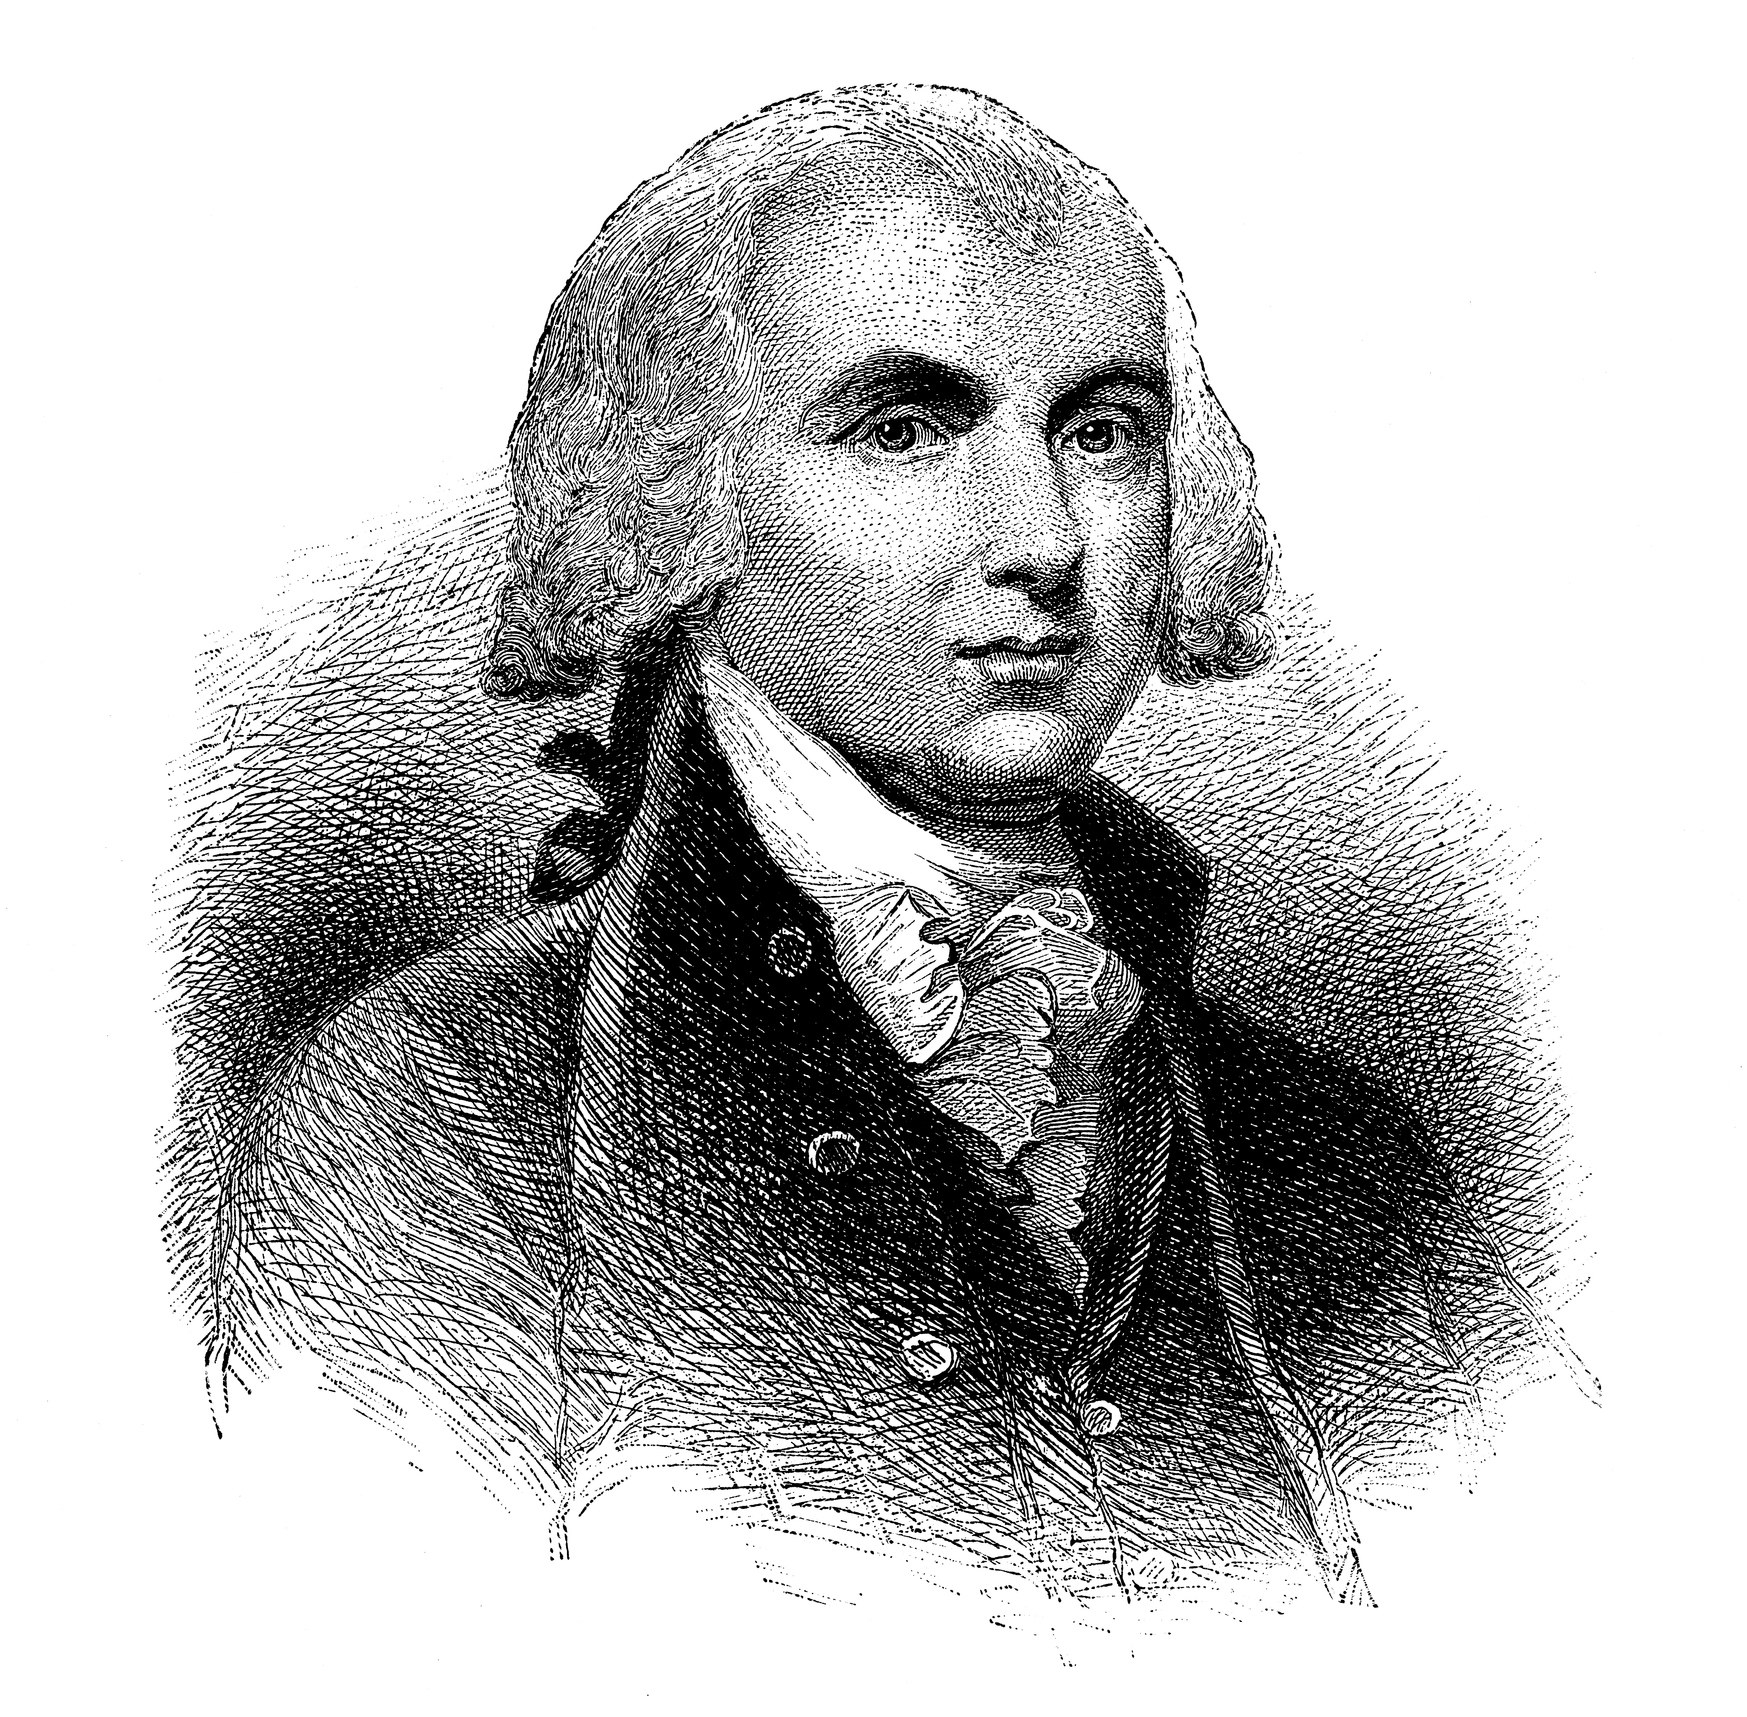 A portrait of James Madison